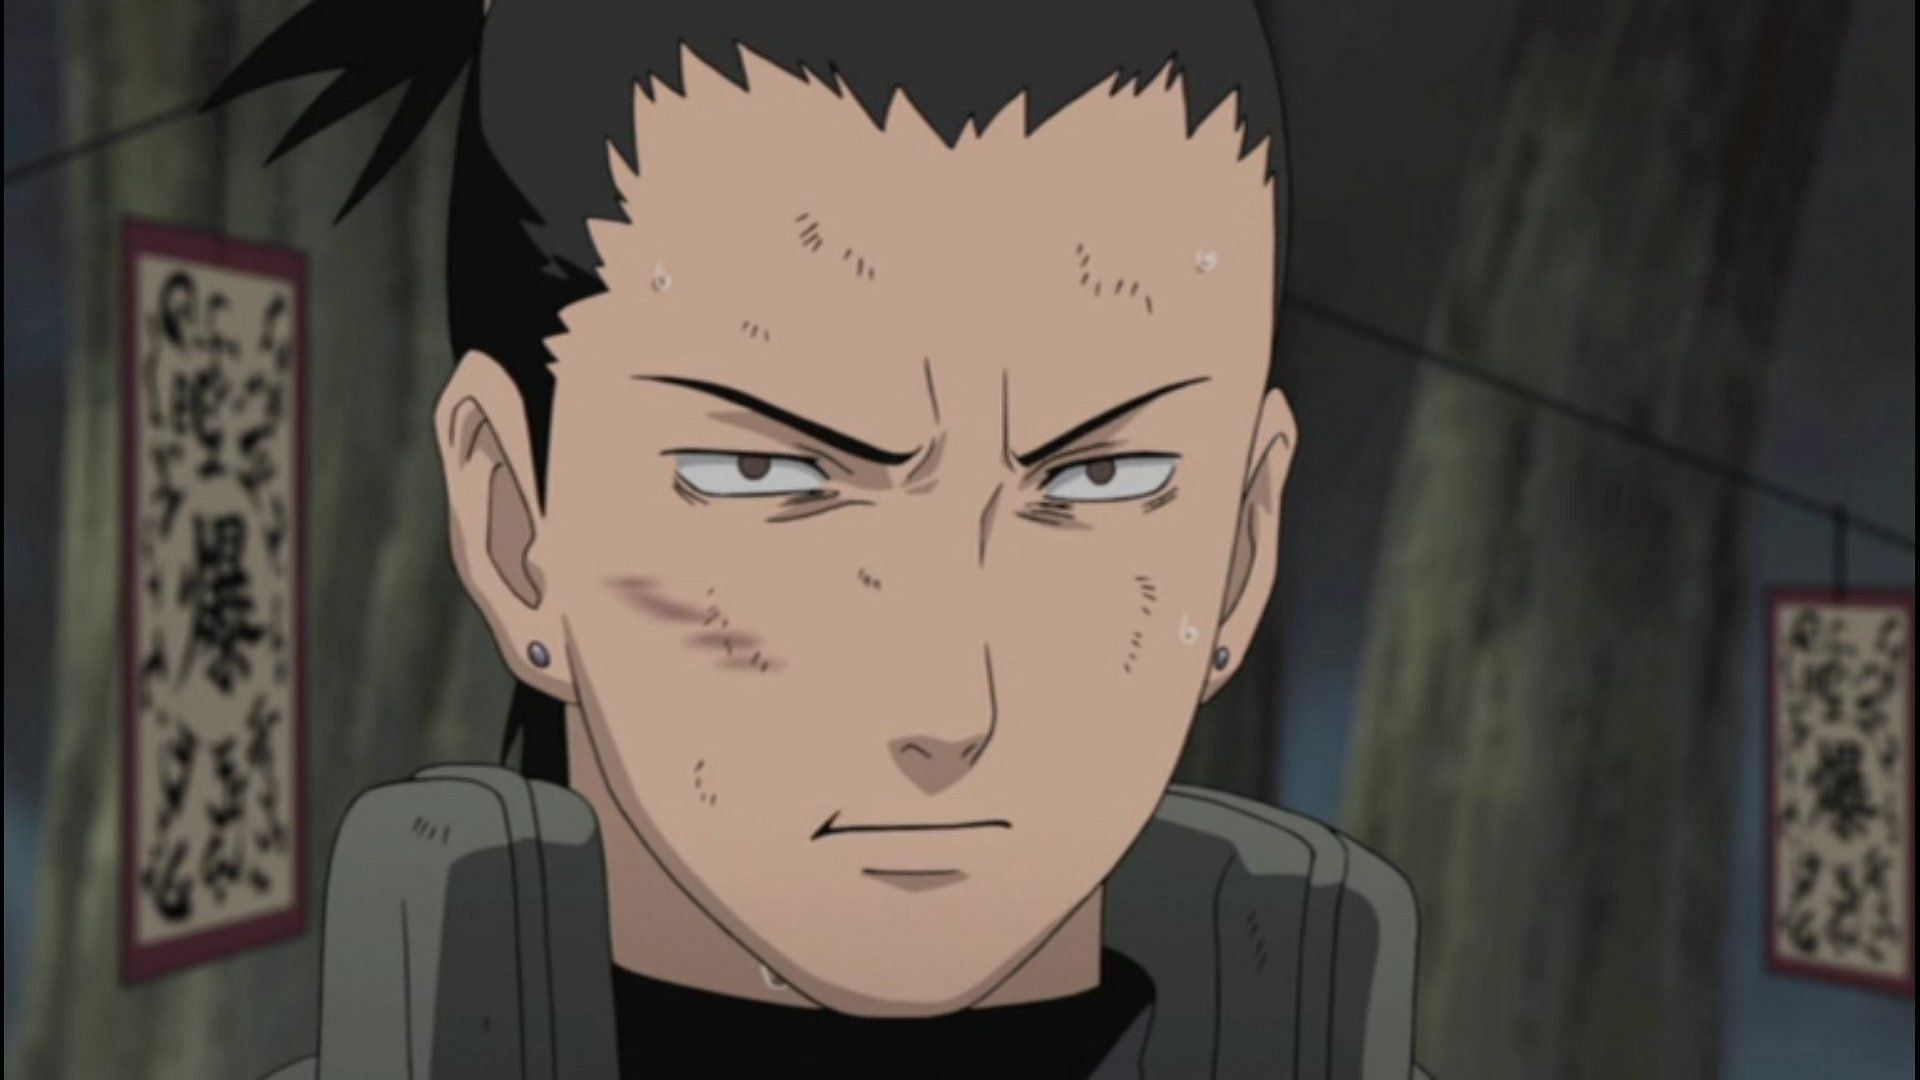 Shikamaru as seen in the anime series (Image Credits: Masashi Kishimoto/Shueisha, Viz Media, Naruto)